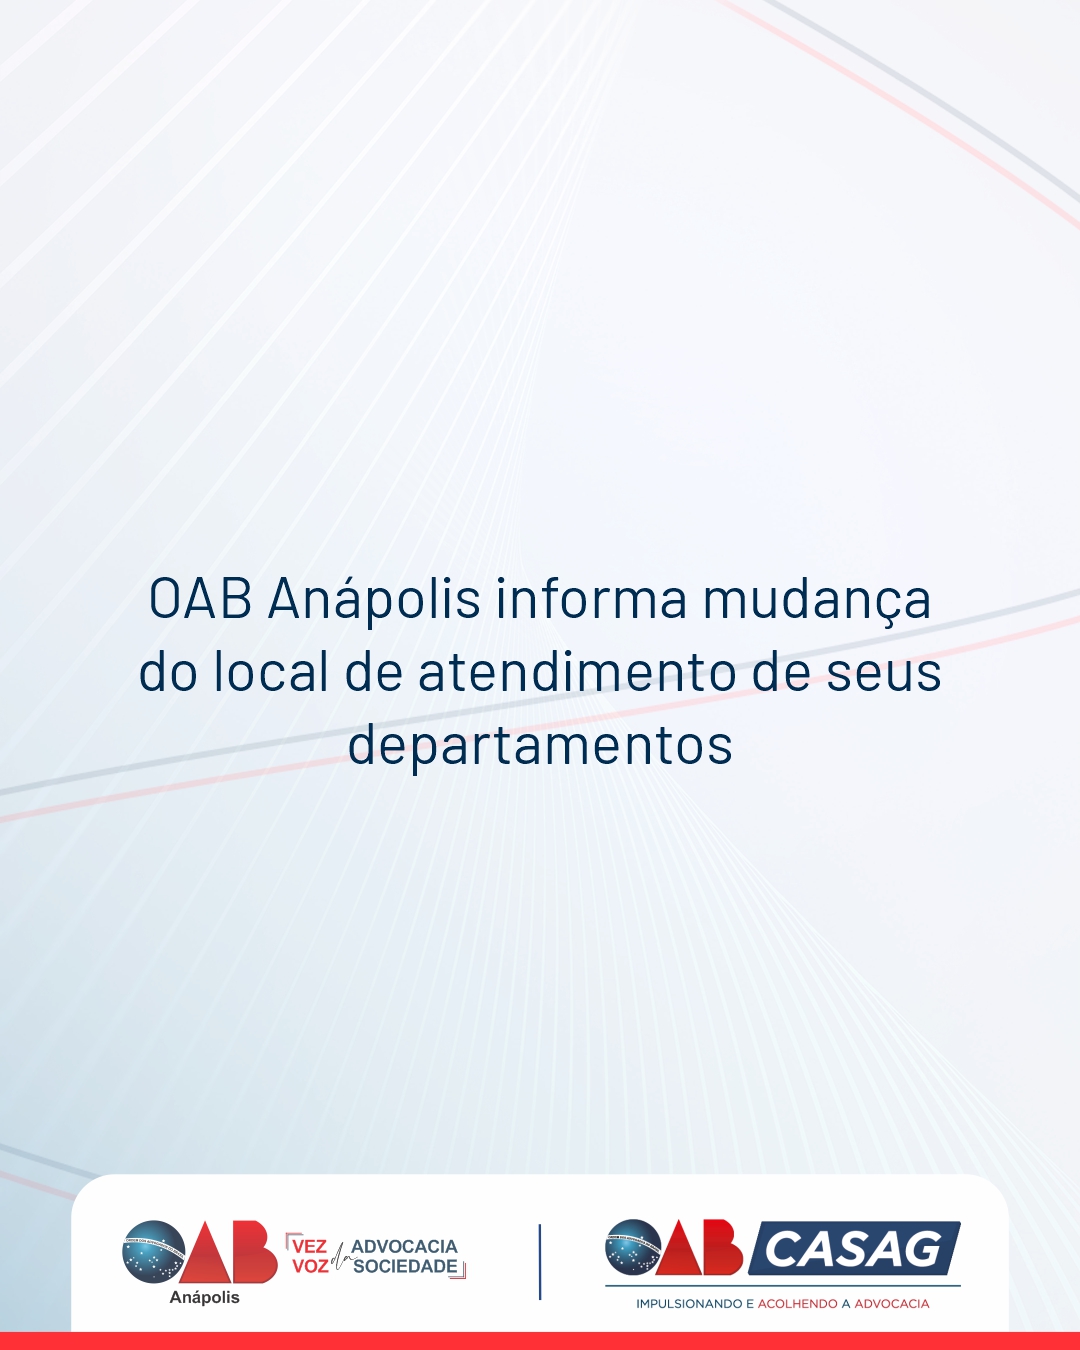 OAB Anápolis informa mudança do local de atendimento de seus departamentos